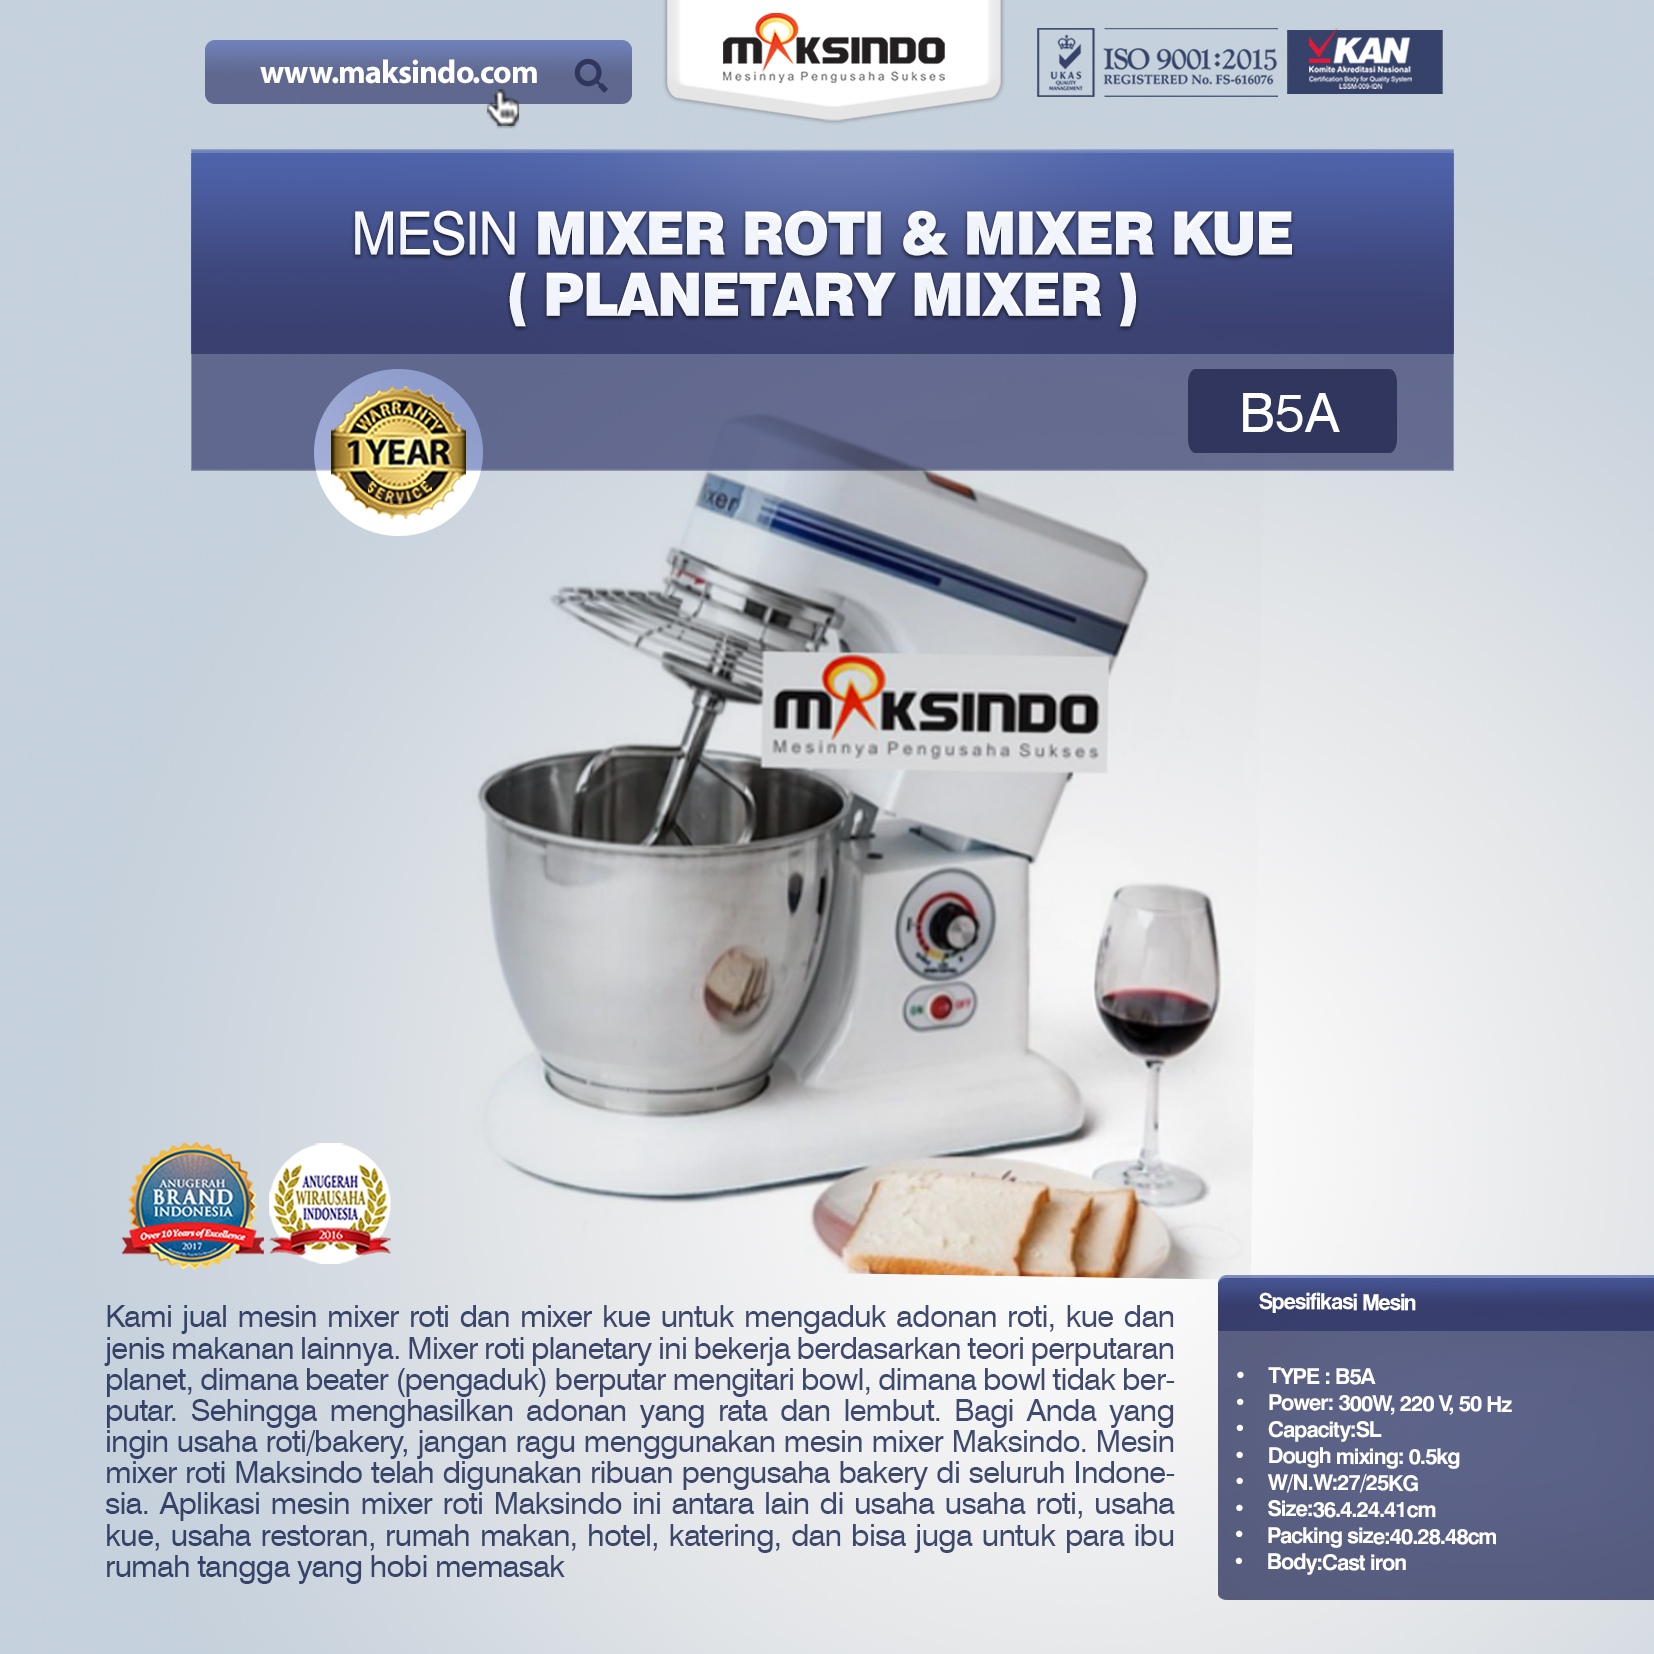 Jual Mesin Mixer Roti dan Kue Model Planetary di Yogyakarta